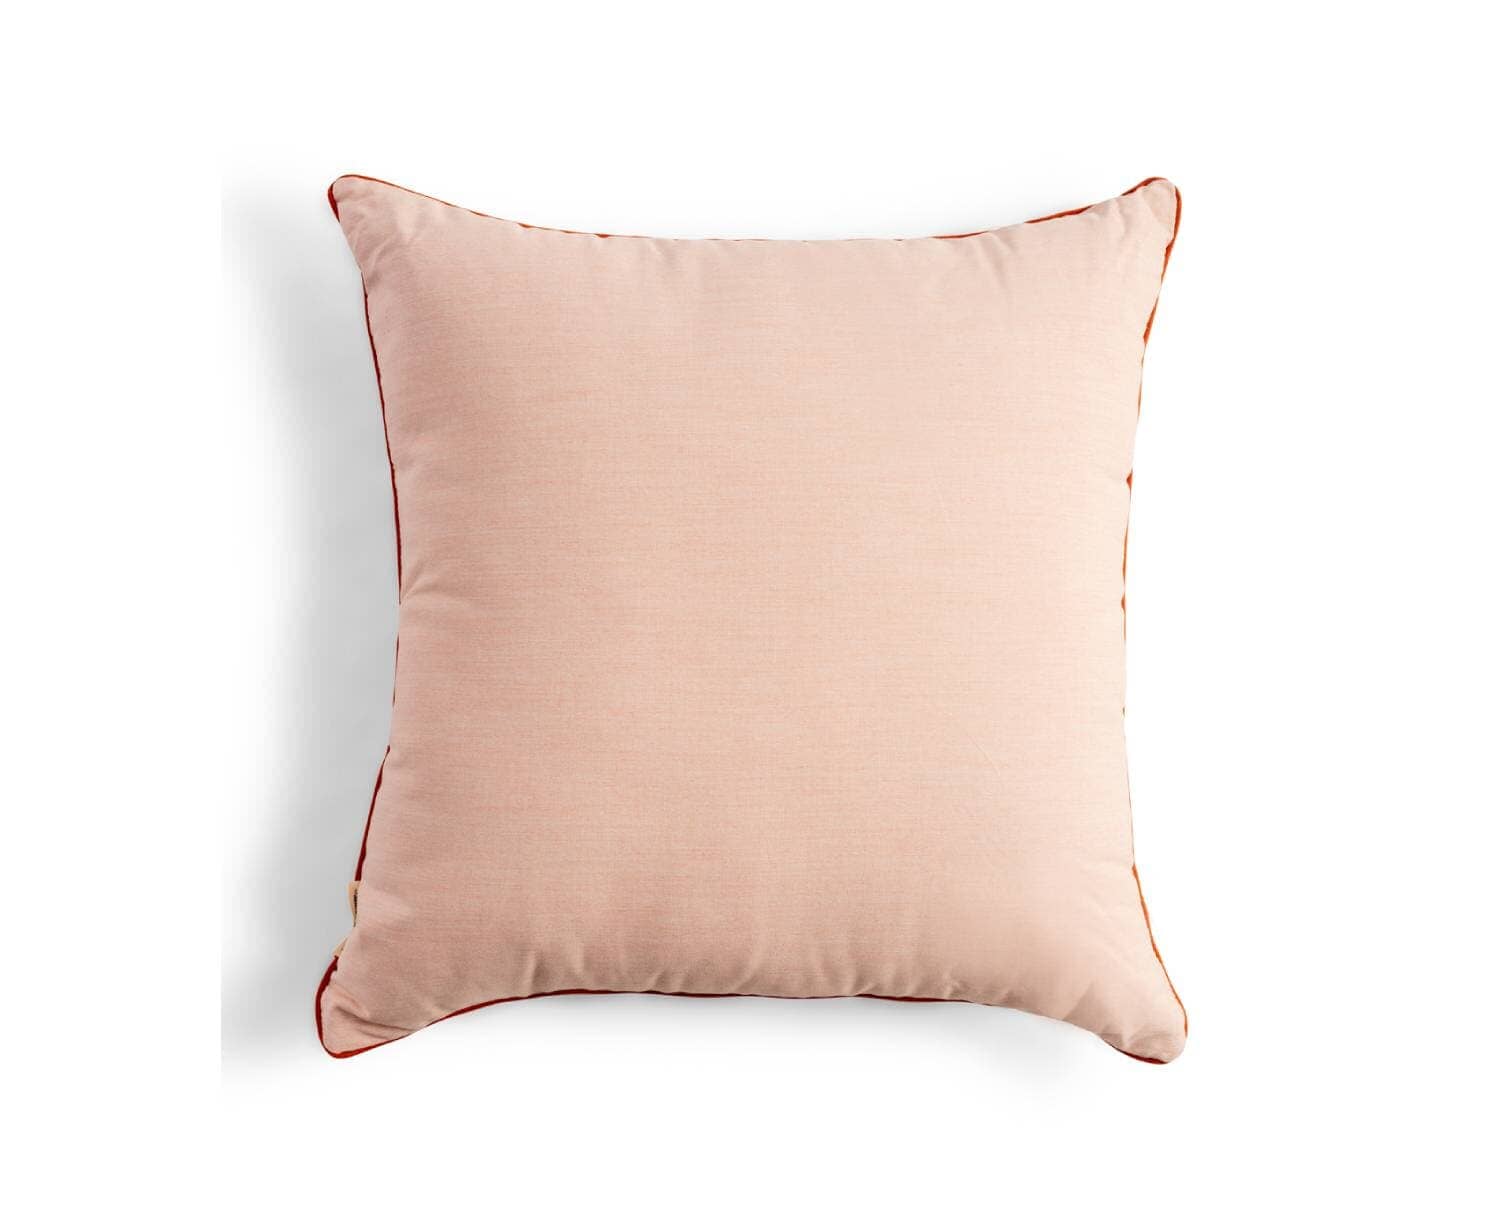 The Euro Throw Pillow - Rivie Pink Euro Throw Pillow Business & Pleasure Co. 